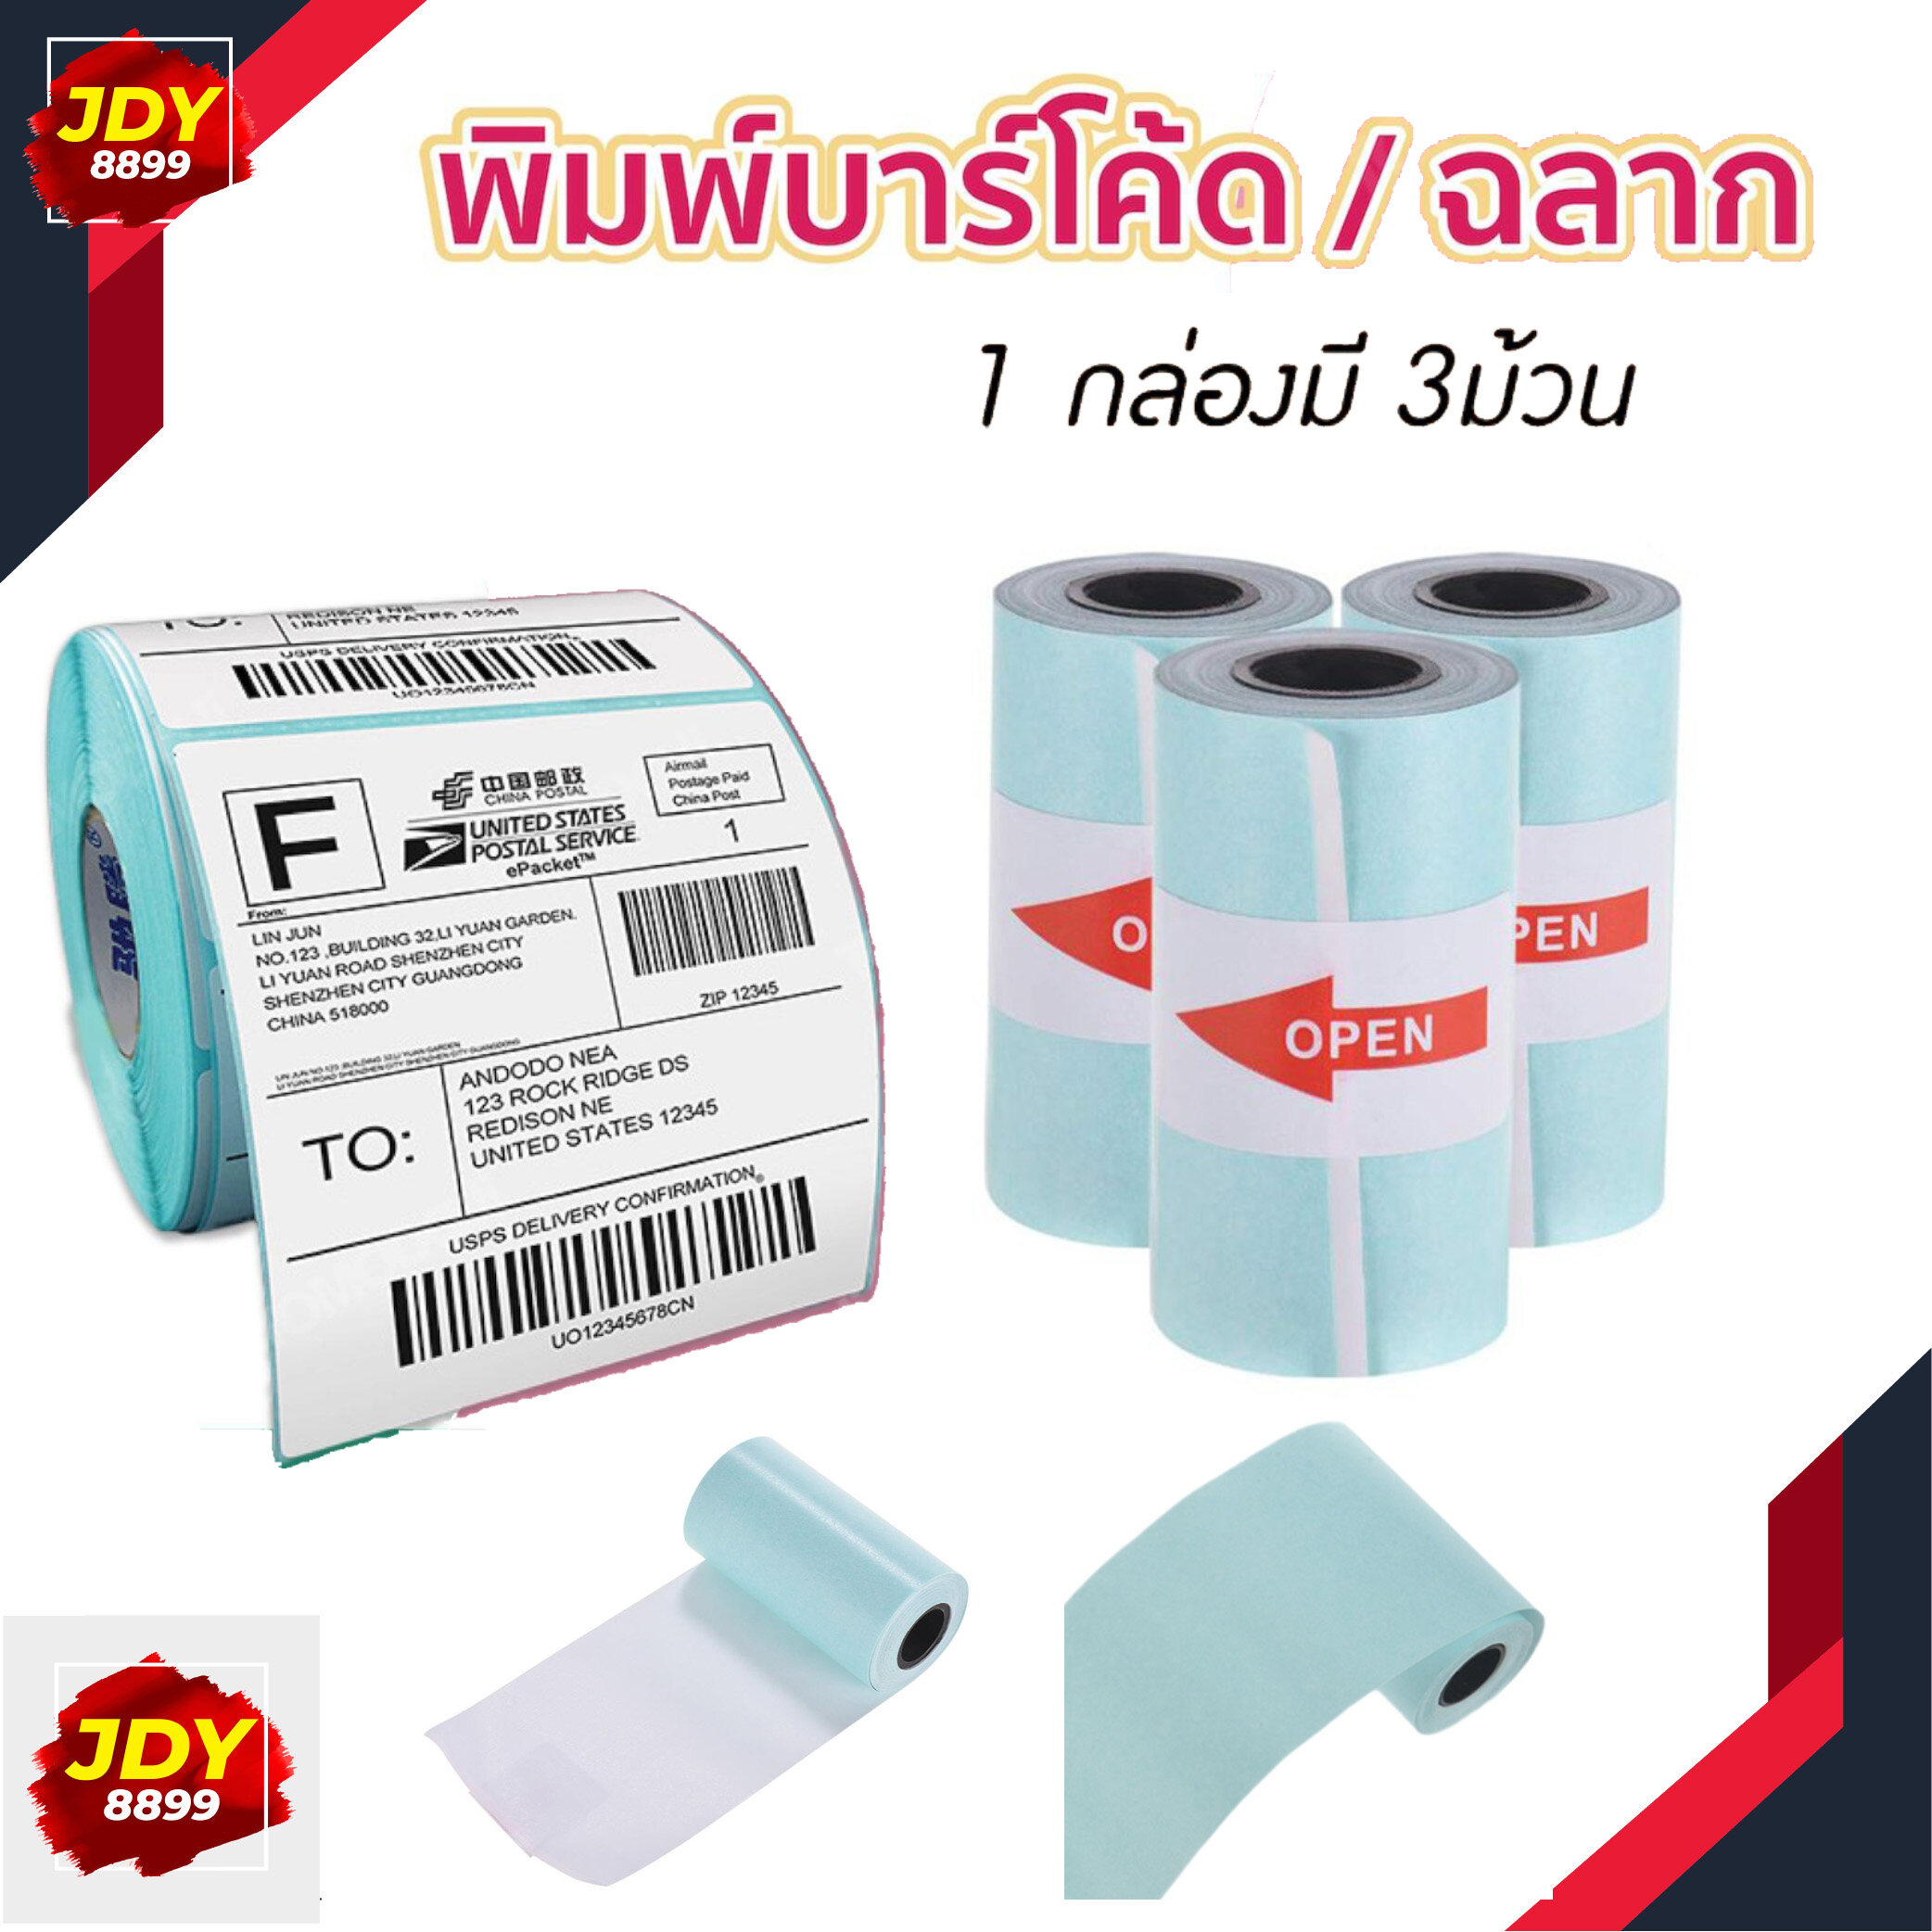 กระดาษสติกเกอร์ แพ็ค3ม้วน กระดาษปริ้น Paperang Sticker Paperang/Paperoll White Paper กระดาษความร้อน กระดาษ JDY8899